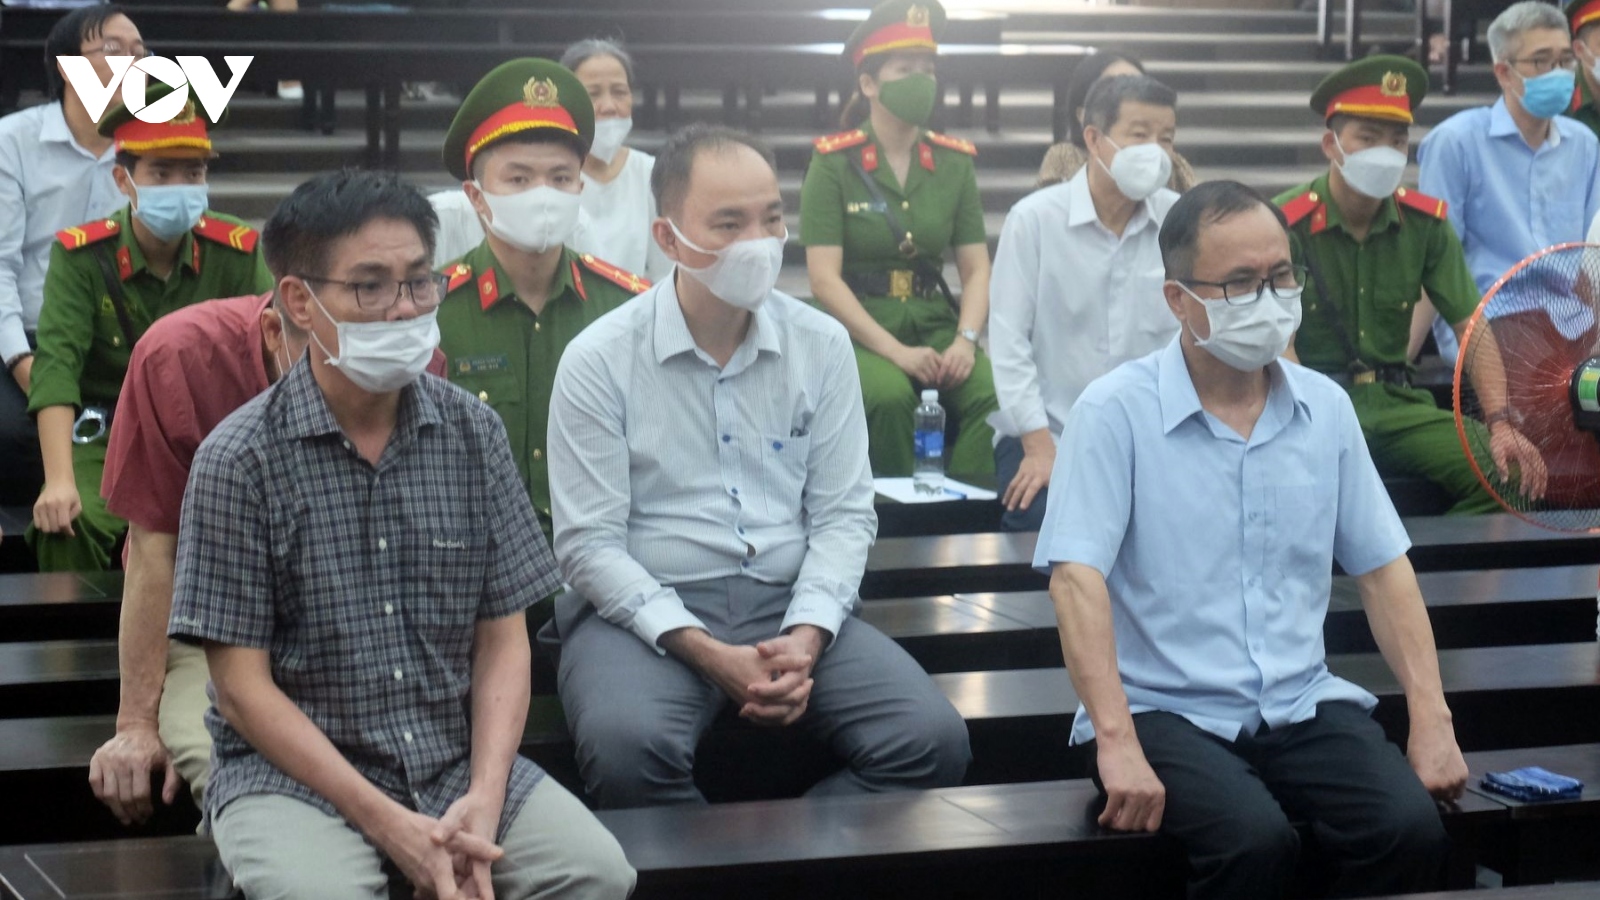 Cựu Bí thư Bình Dương Trần Văn Nam bị đề nghị án từ 9-10 năm tù giam